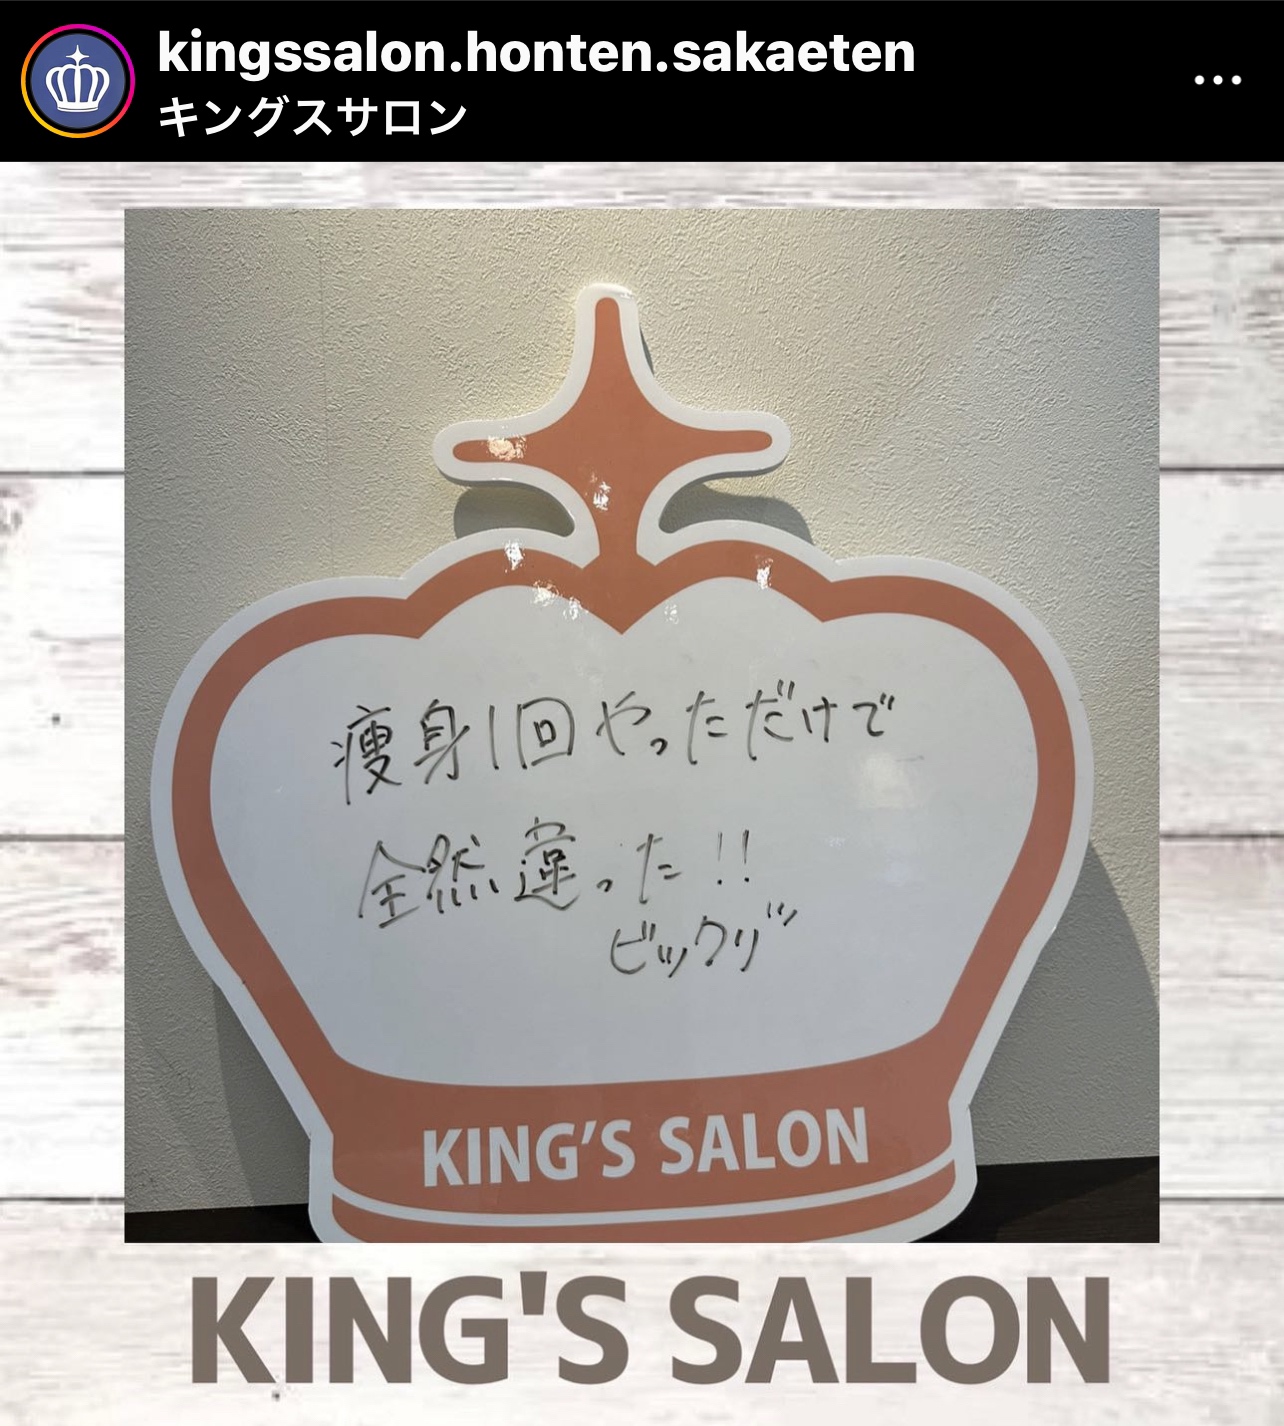 キングスサロン名古屋栄店 お客様の声 サムネイル画像